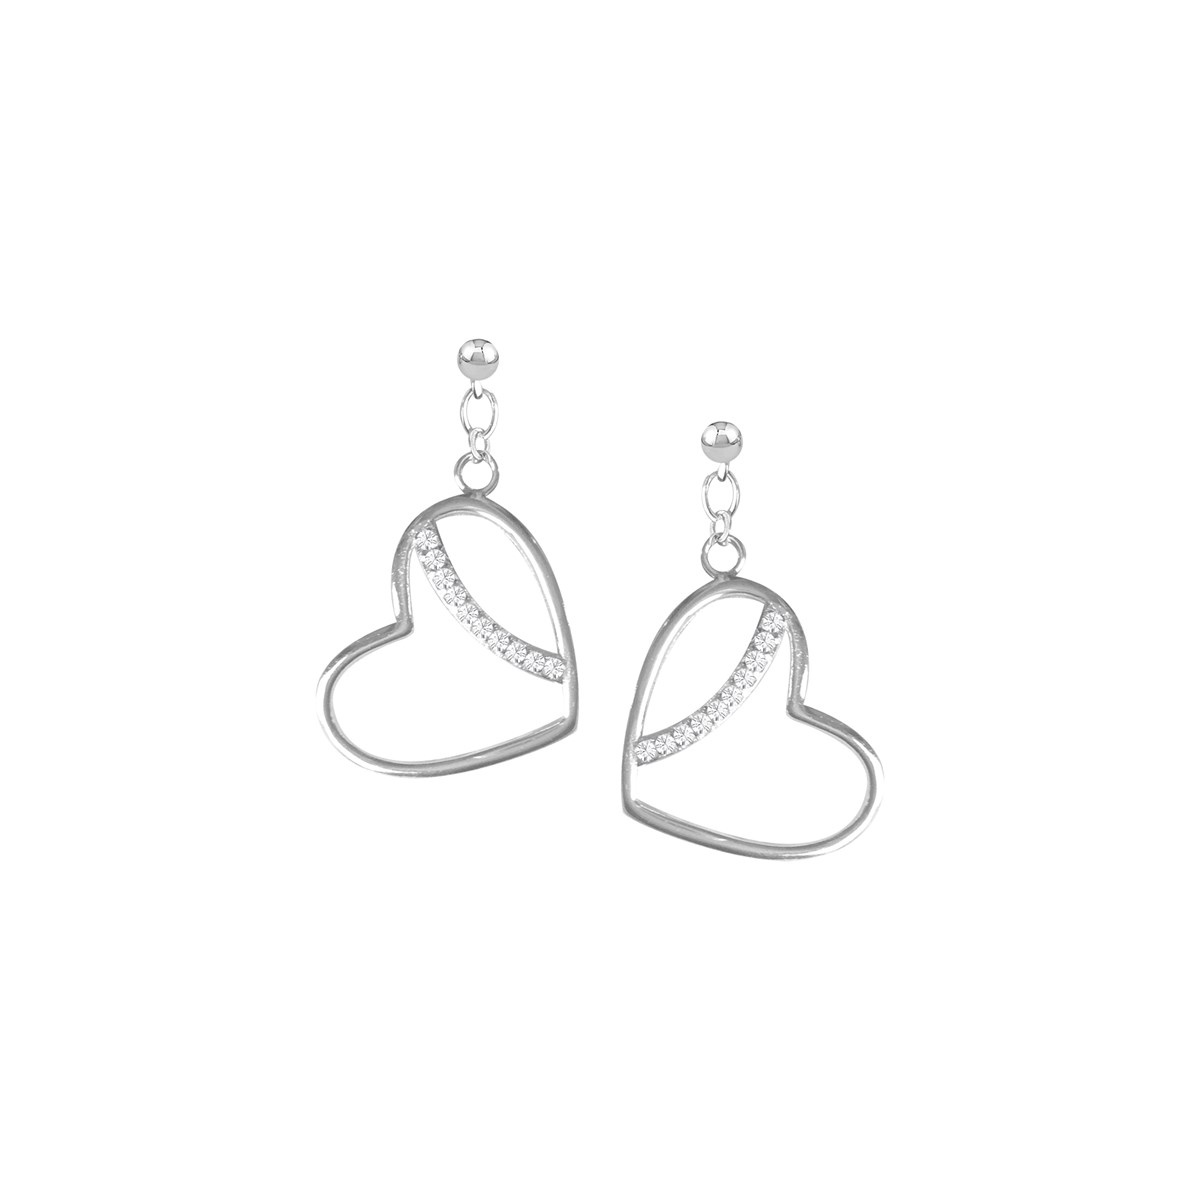 Boucles d'oreilles coeur en argent 925 rhodié et oxydes de zirconium